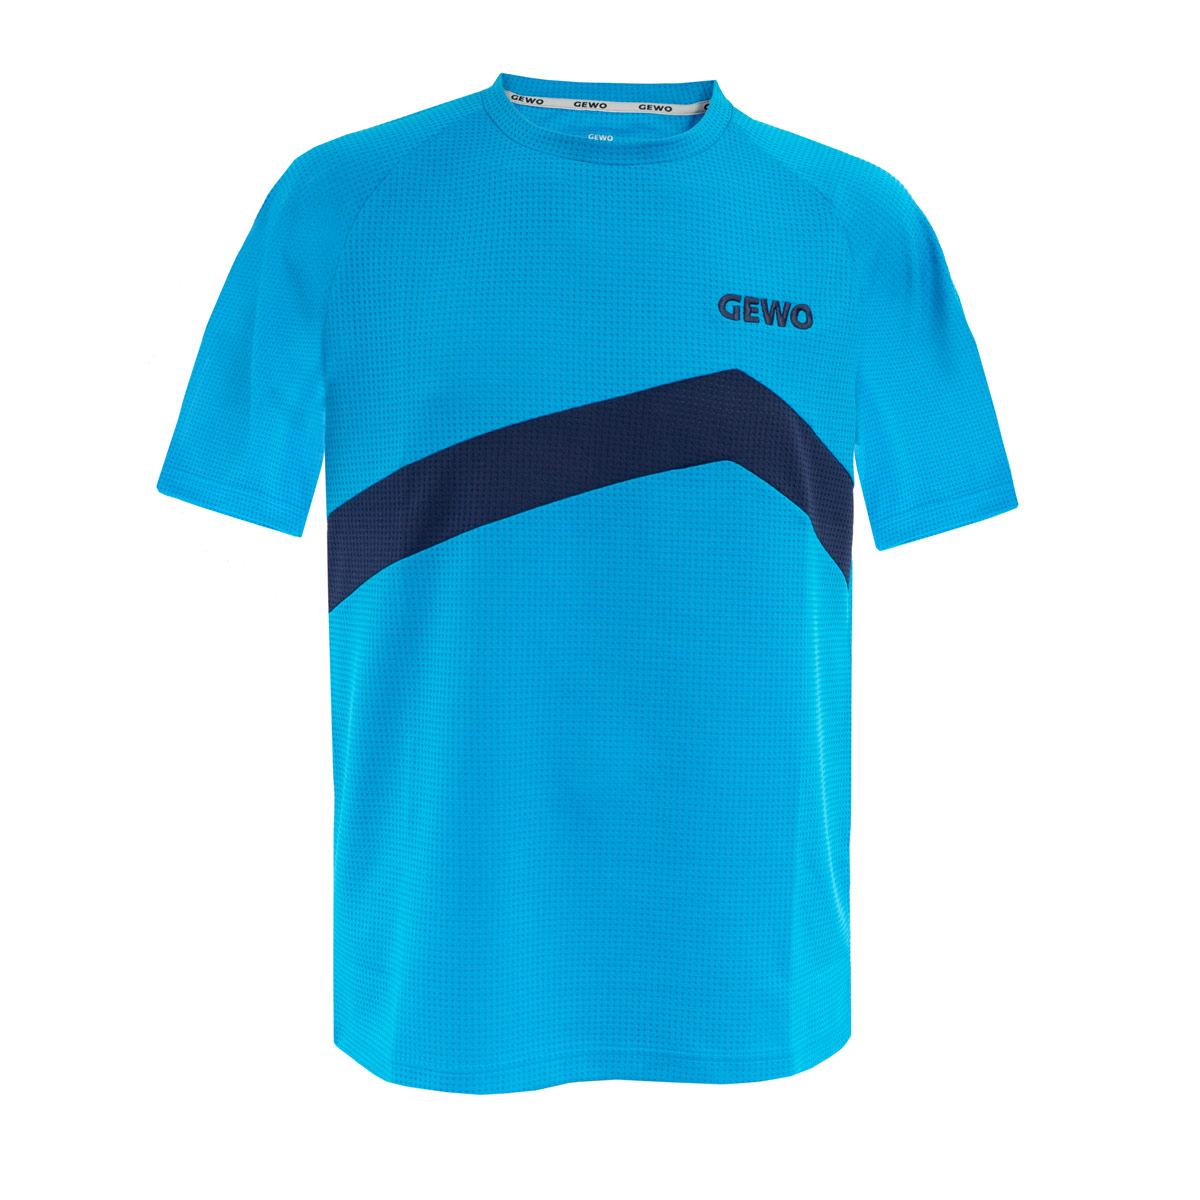 GEWO T-Shirt Belas Promo #teamGEWO blau/navy XS